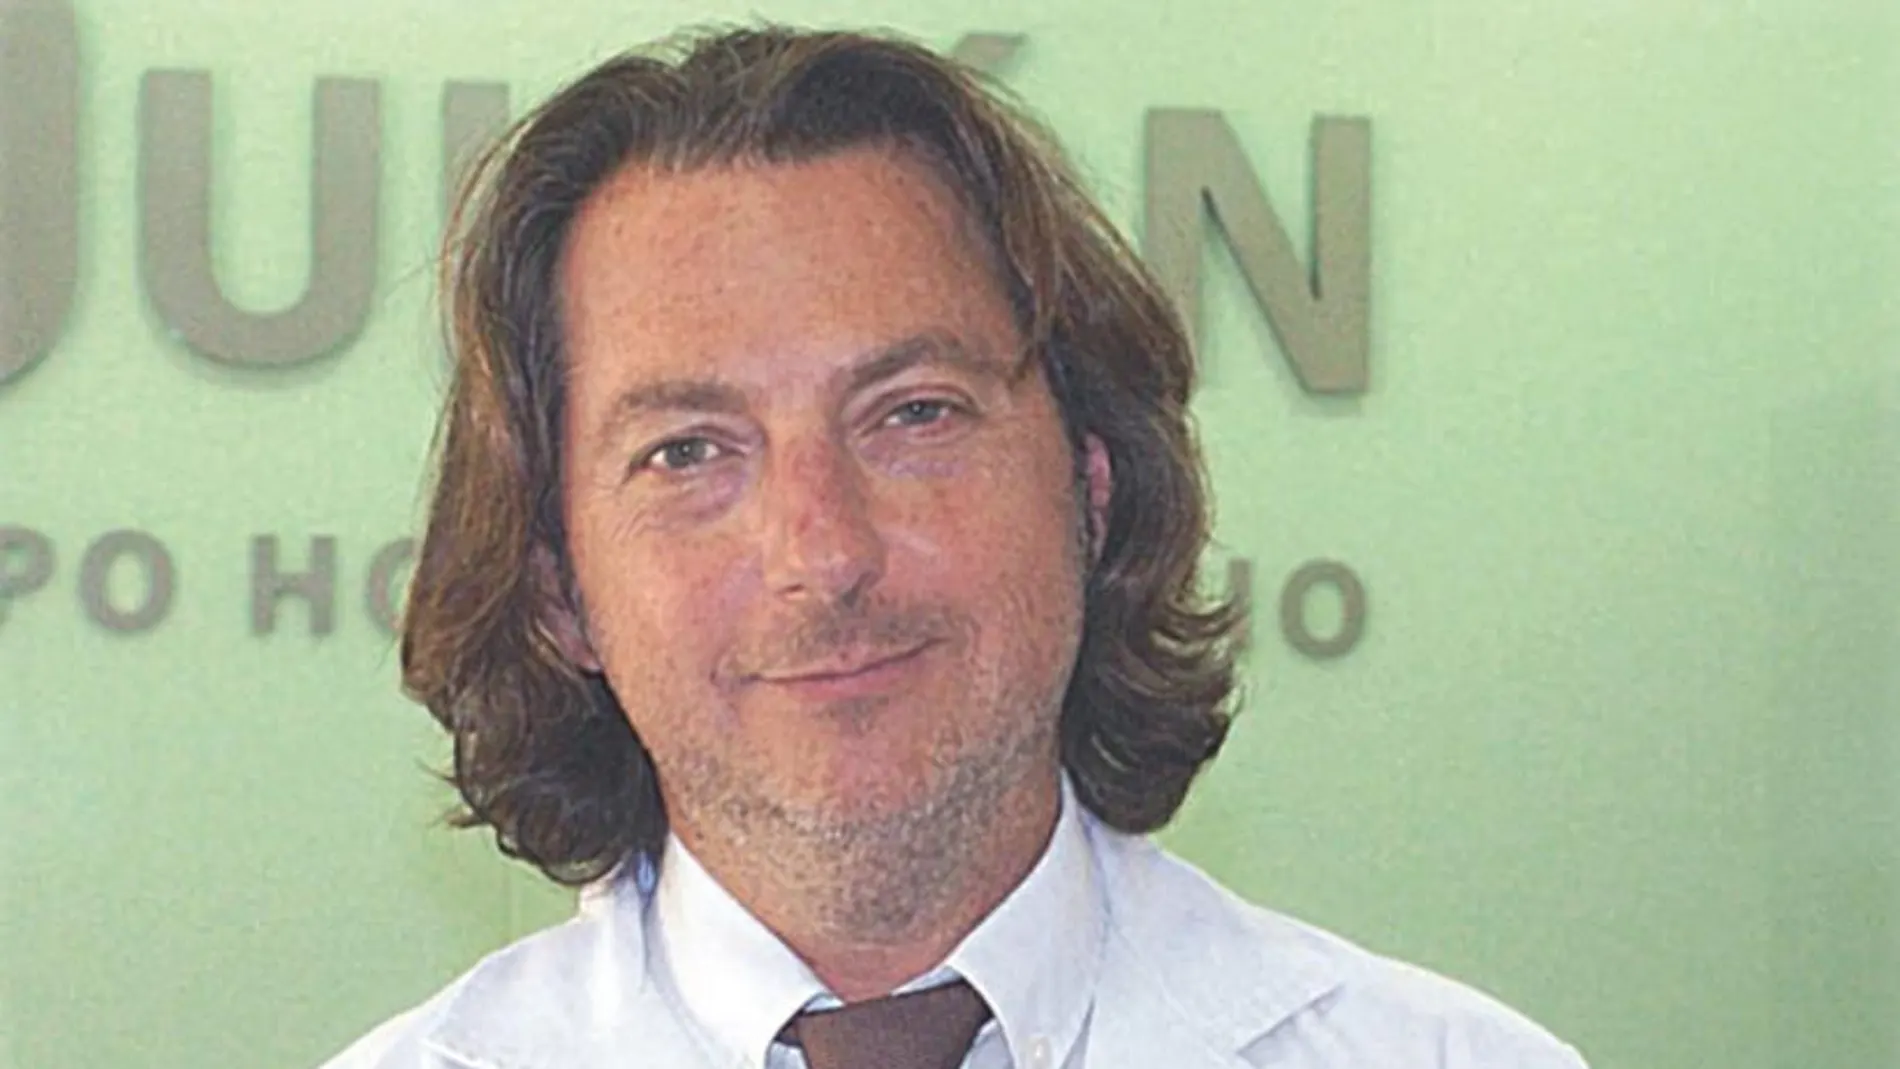 Dr. Carlos Sala Palau/ Coordinador de la Unidad de Cirugía de la Obesidad y Metabólica del Hospital Quirónsalud Valencia